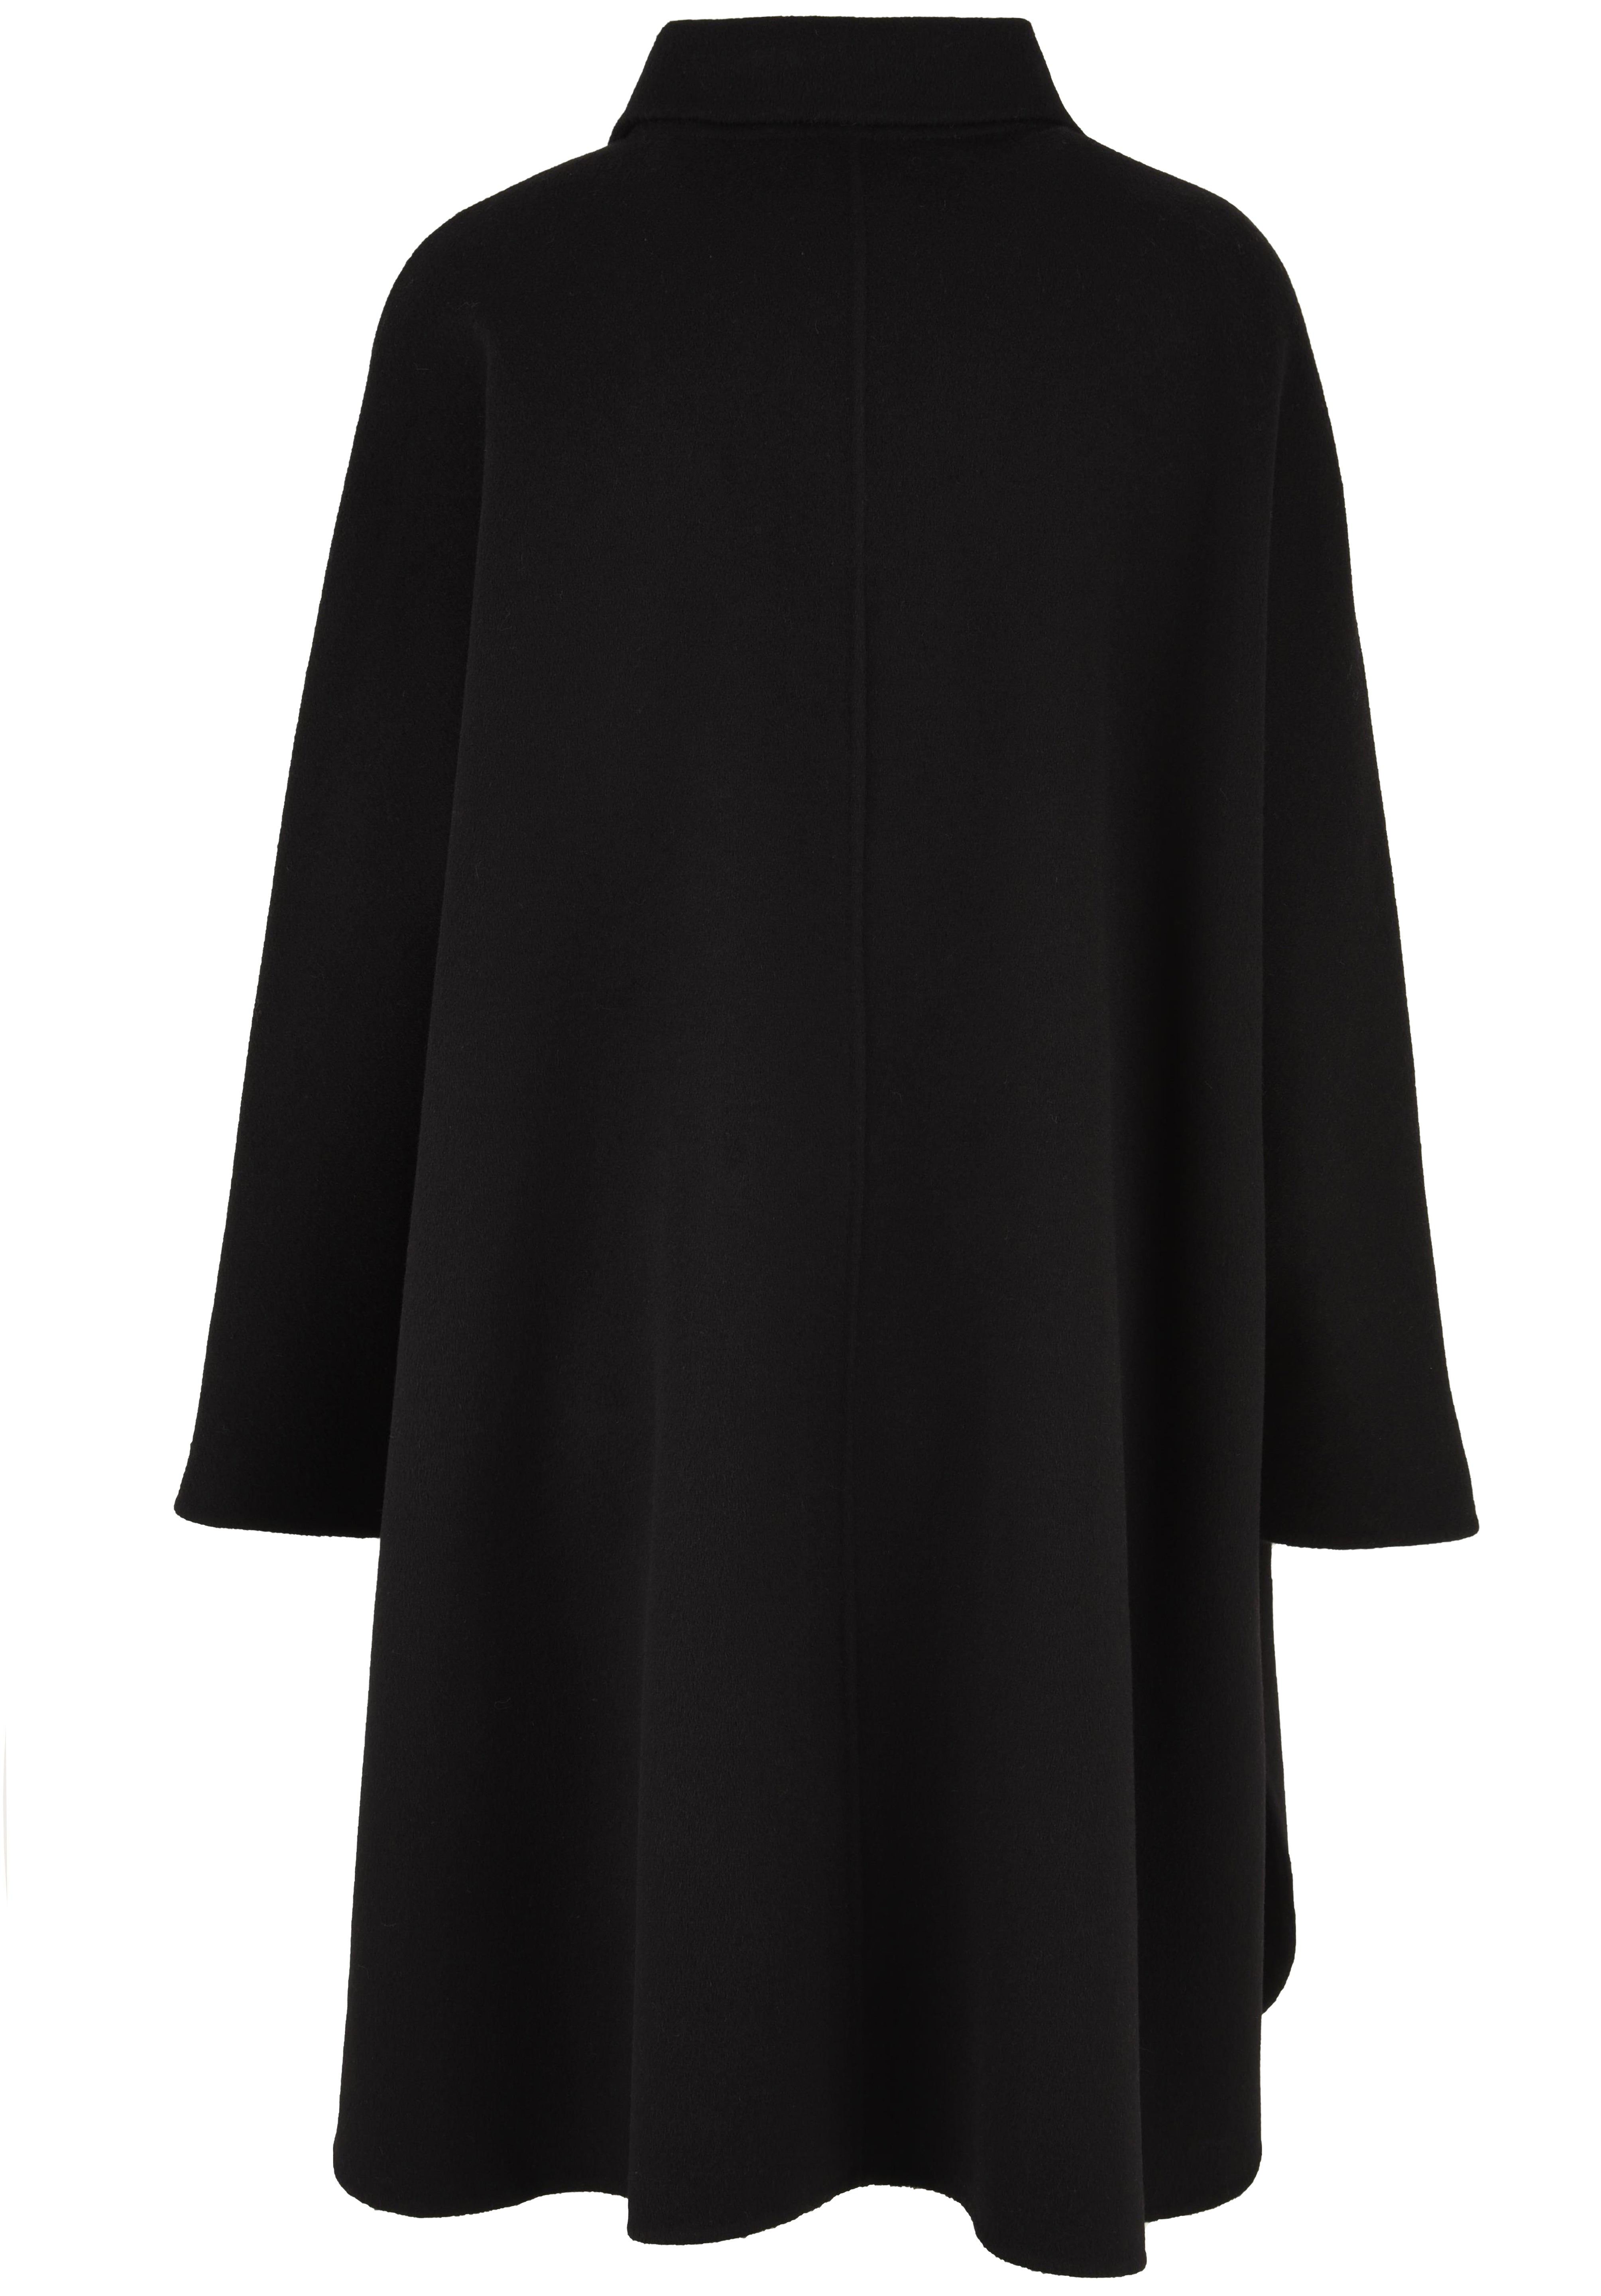 Cappotto lungo Donna in lana nero, Glox, retro